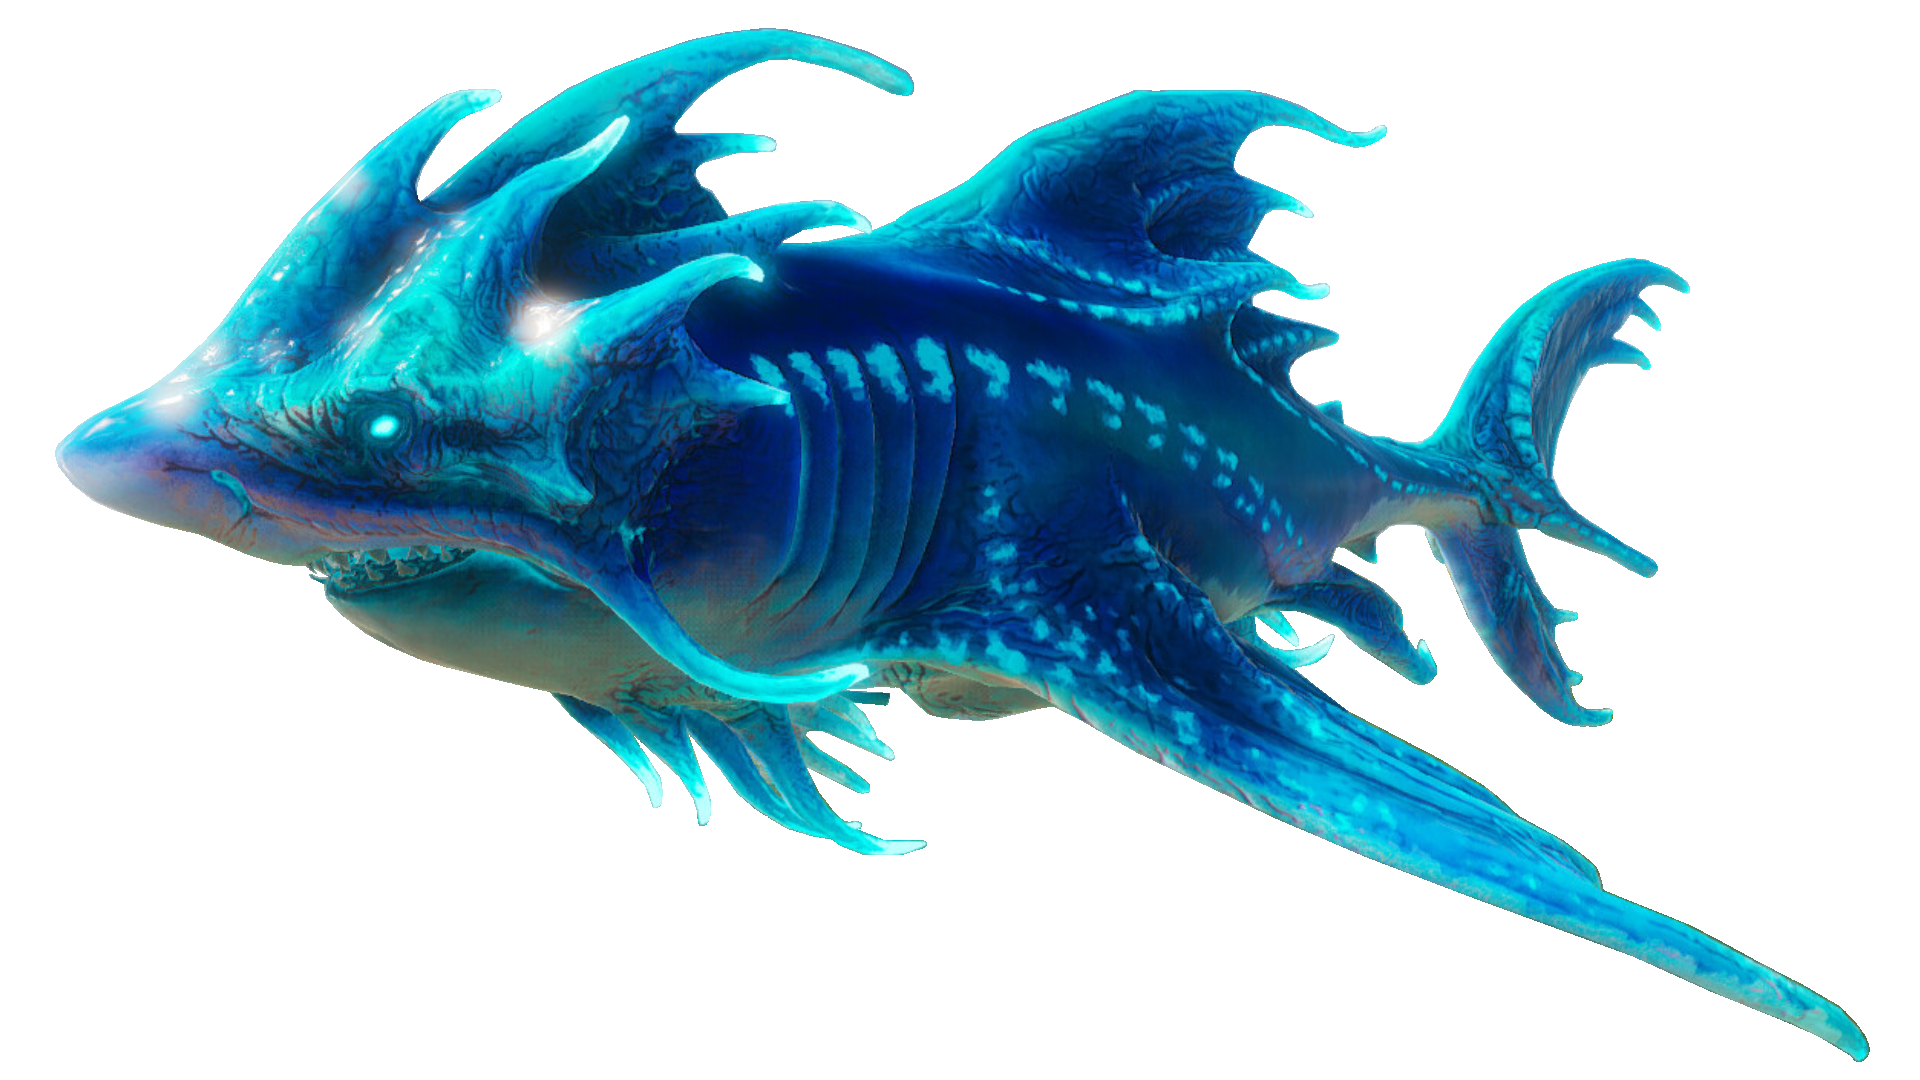 The Ravager Fleets of the Sea Salamander Dgk66gn-e8db81cc-02e3-4217-a979-effe3ccd5ab8.png?token=eyJ0eXAiOiJKV1QiLCJhbGciOiJIUzI1NiJ9.eyJzdWIiOiJ1cm46YXBwOjdlMGQxODg5ODIyNjQzNzNhNWYwZDQxNWVhMGQyNmUwIiwiaXNzIjoidXJuOmFwcDo3ZTBkMTg4OTgyMjY0MzczYTVmMGQ0MTVlYTBkMjZlMCIsIm9iaiI6W1t7InBhdGgiOiJcL2ZcLzlmNTg3NTRiLTUxYzctNDM0Ni05MGM5LWZmODBhZDk0OGZhN1wvZGdrNjZnbi1lOGRiODFjYy0wMmUzLTQyMTctYTk3OS1lZmZlM2NjZDVhYjgucG5nIn1dXSwiYXVkIjpbInVybjpzZXJ2aWNlOmZpbGUuZG93bmxvYWQiXX0